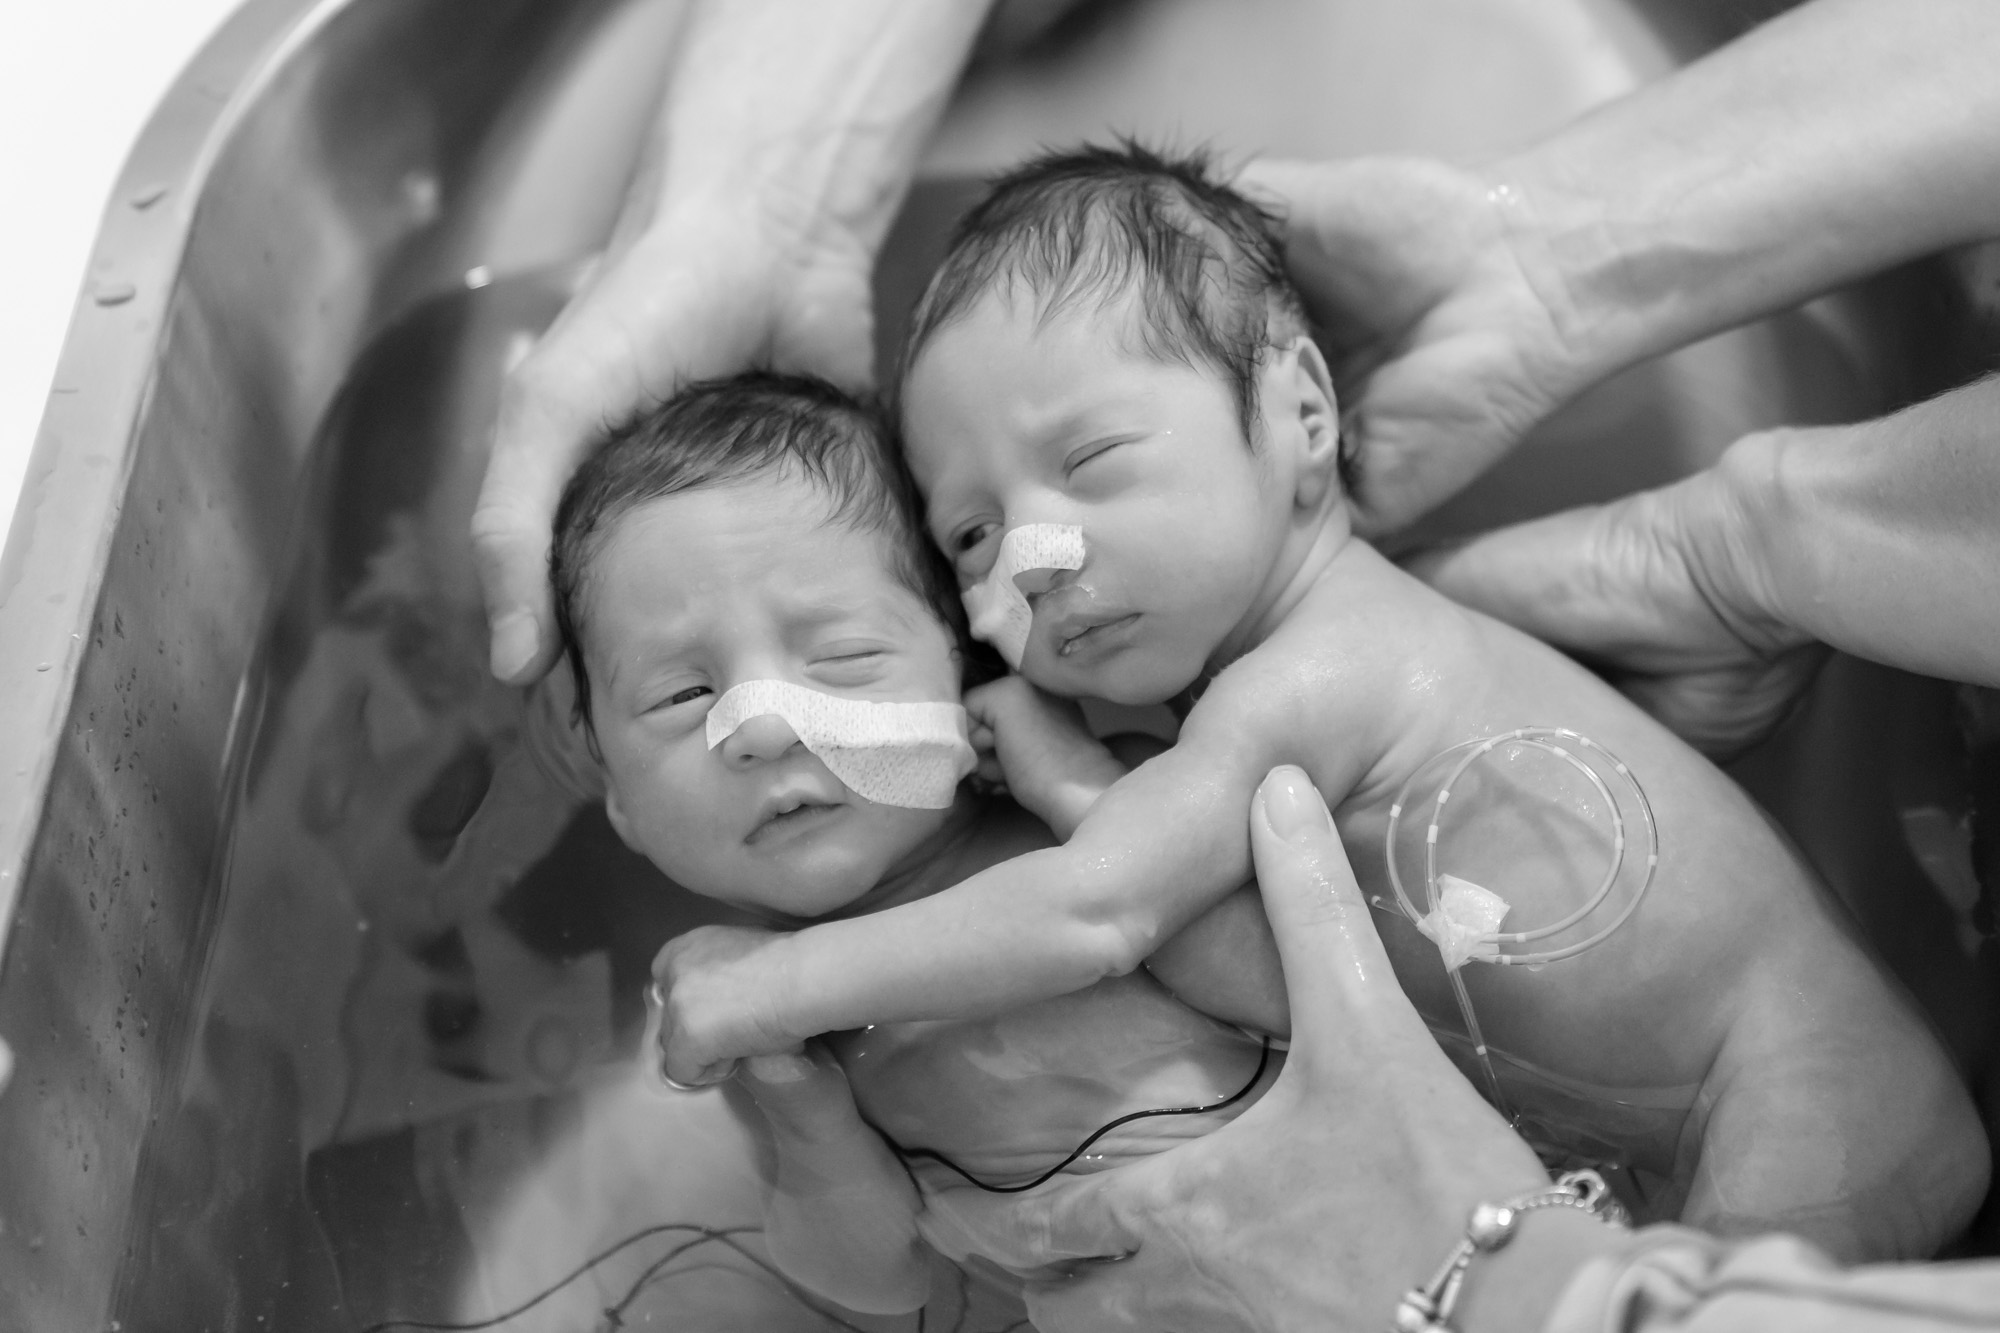 zwart-wit foto van premature tweeling baby's in bad voor stichting earlybirds door mayrafotografie